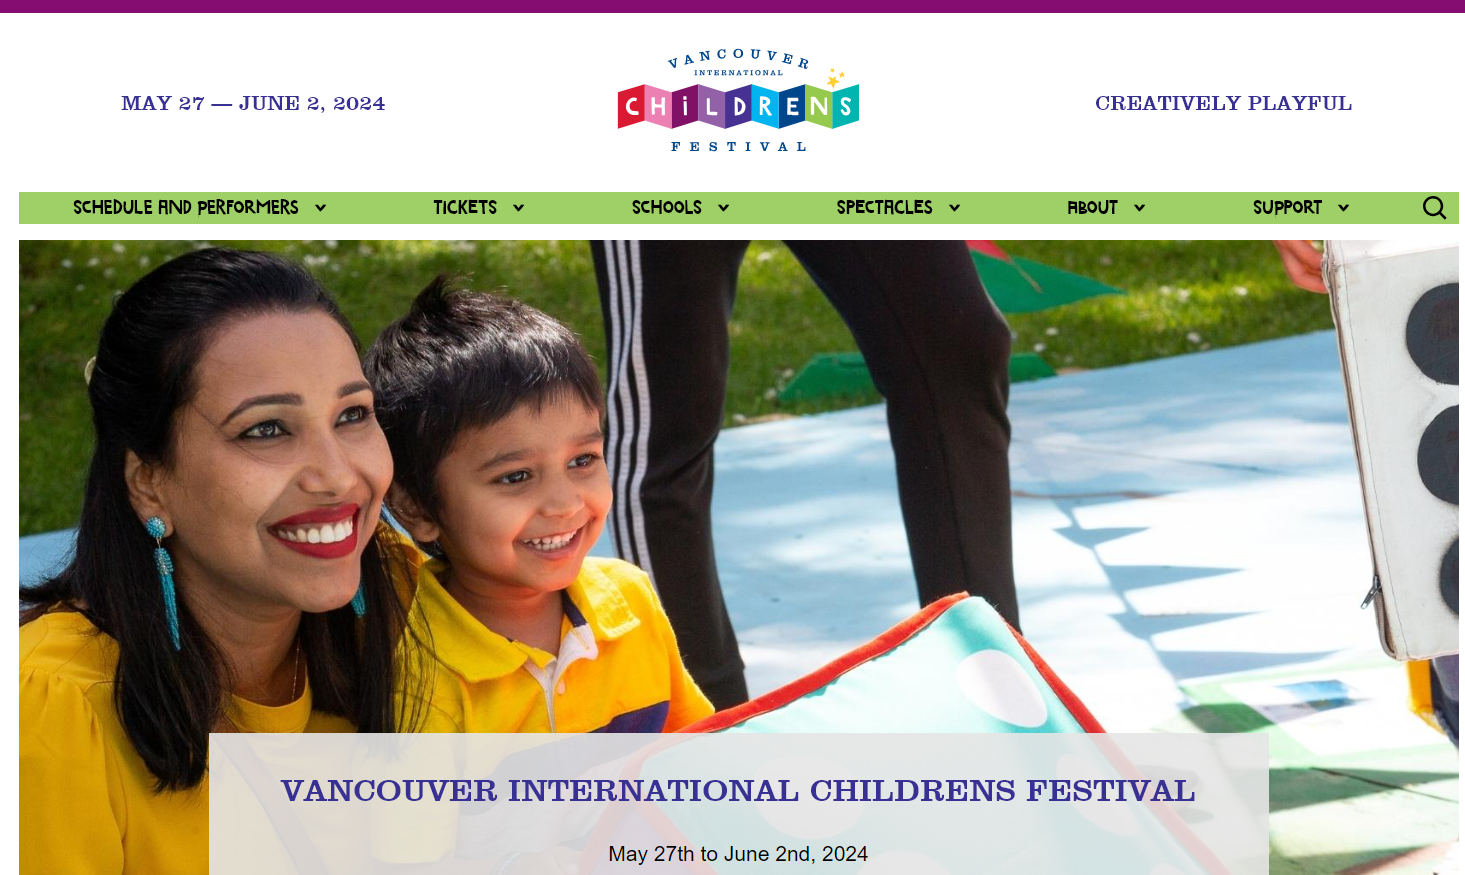 バンクーバー国際児童フェスティバル(Vancouver International Children's Festival) 2024 @ Granville Island | Vancouver | British Columbia | カナダ